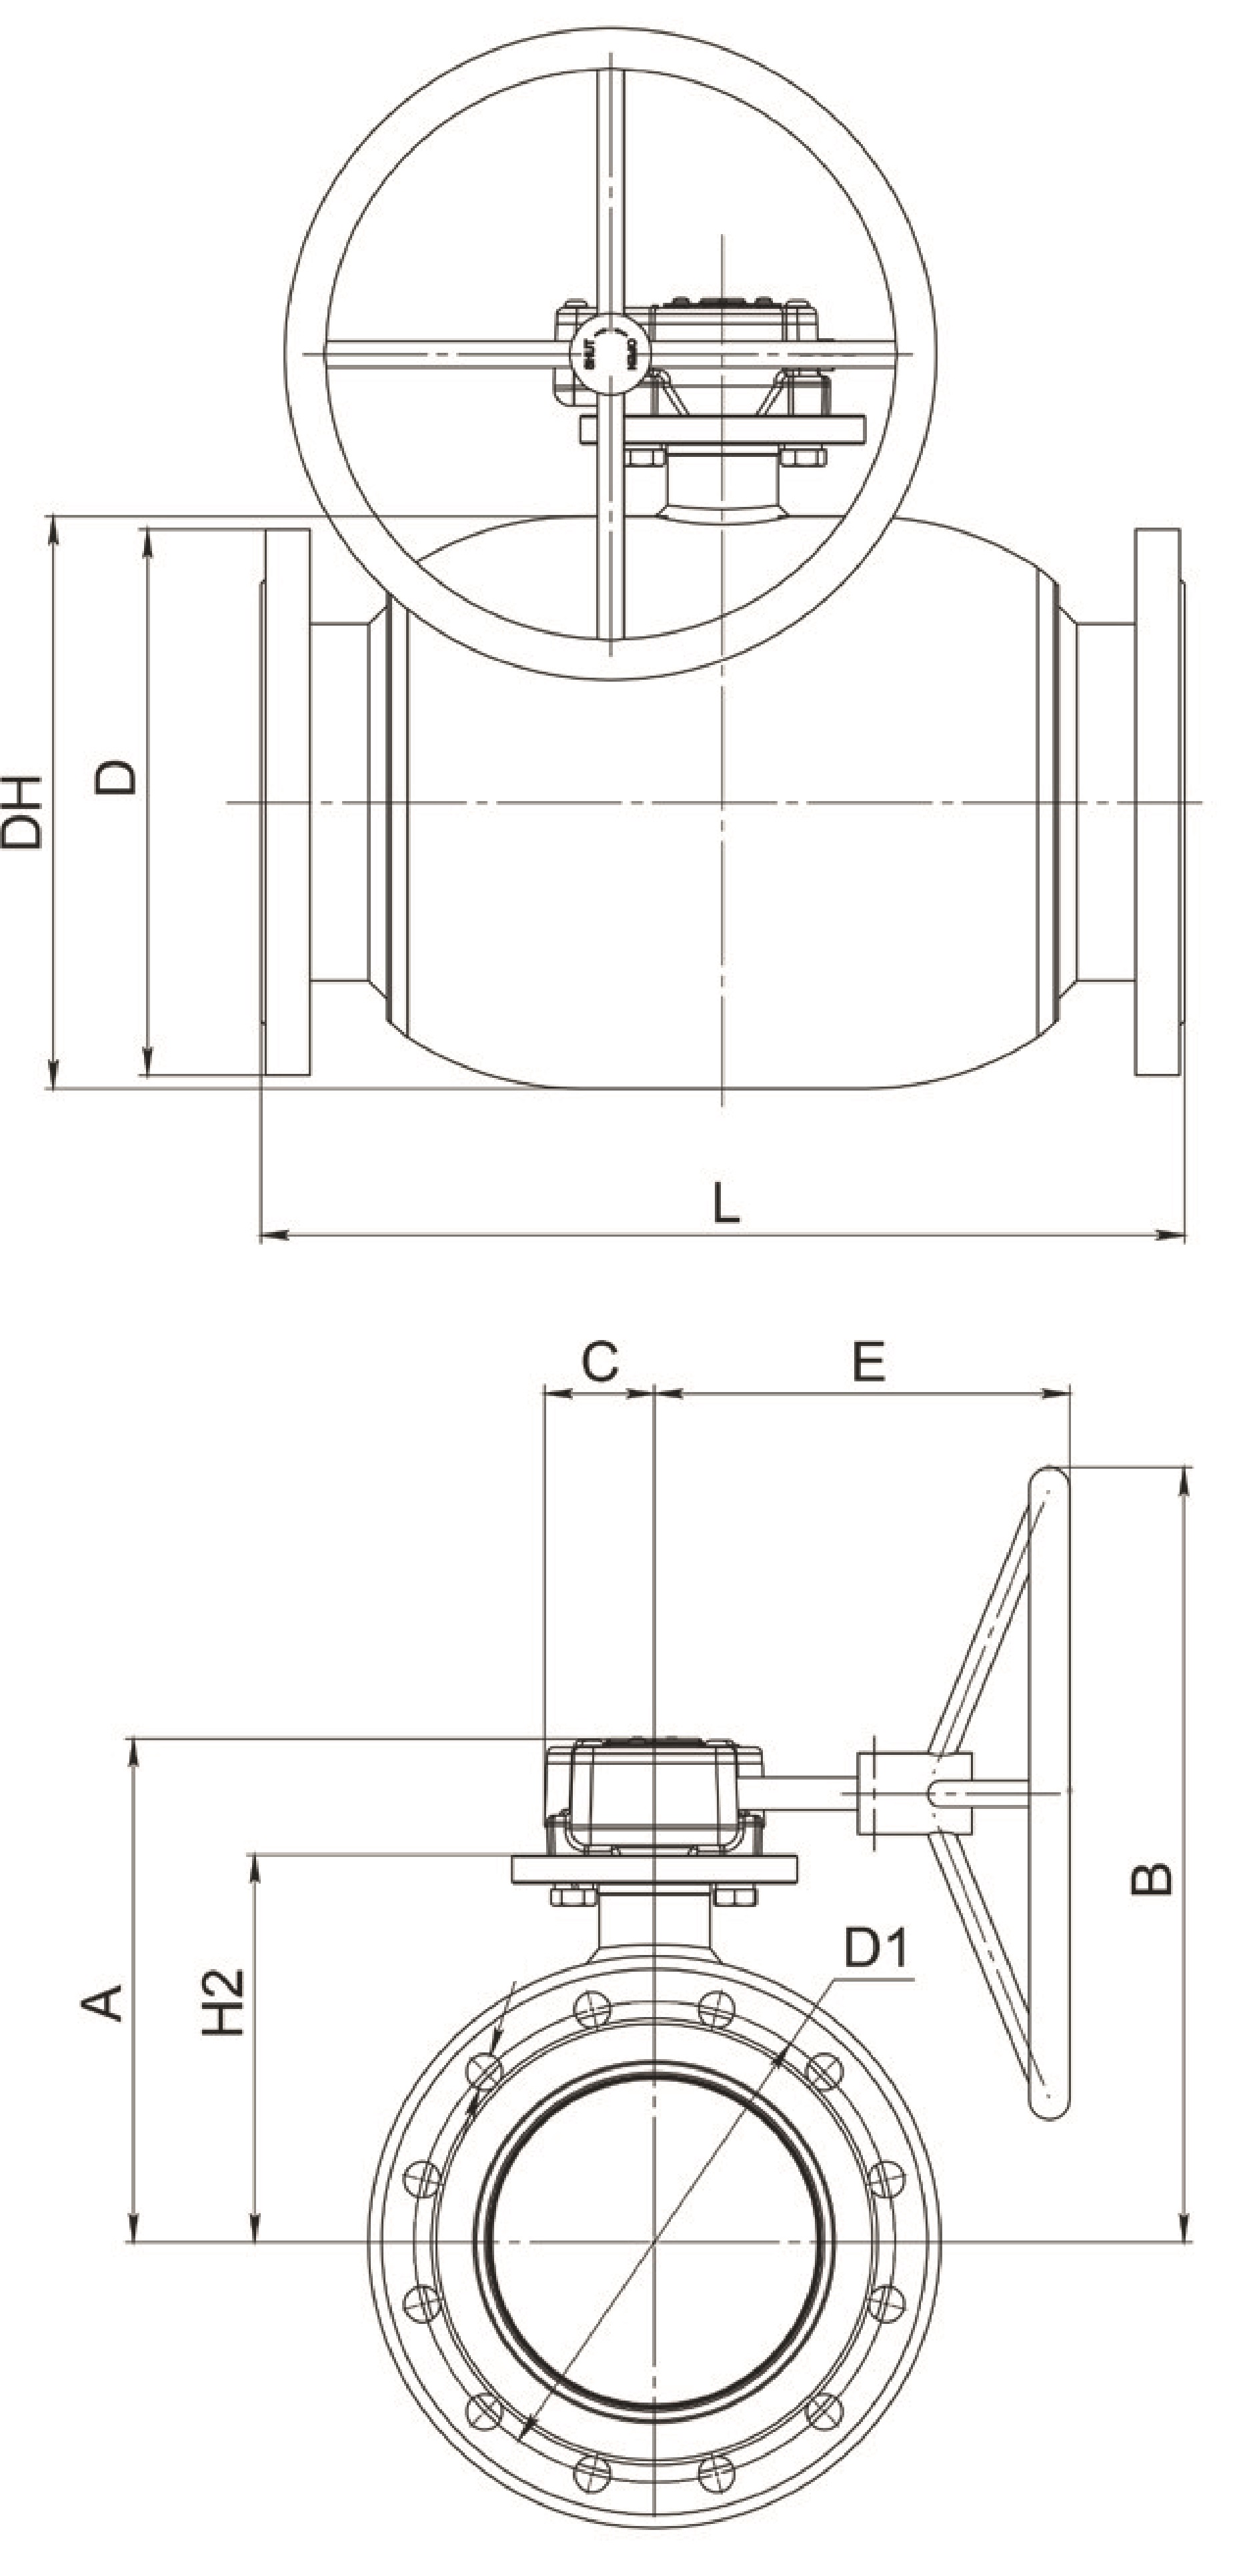 Кран шаровый Broen Ballomax-КШТ61.113.Р.16 Ду125 Ру16 полнопроходный с плавающим шаром, с ISO фланцем, корпус - сталь, уплотнение - EPDM, фланцевый, с редуктором